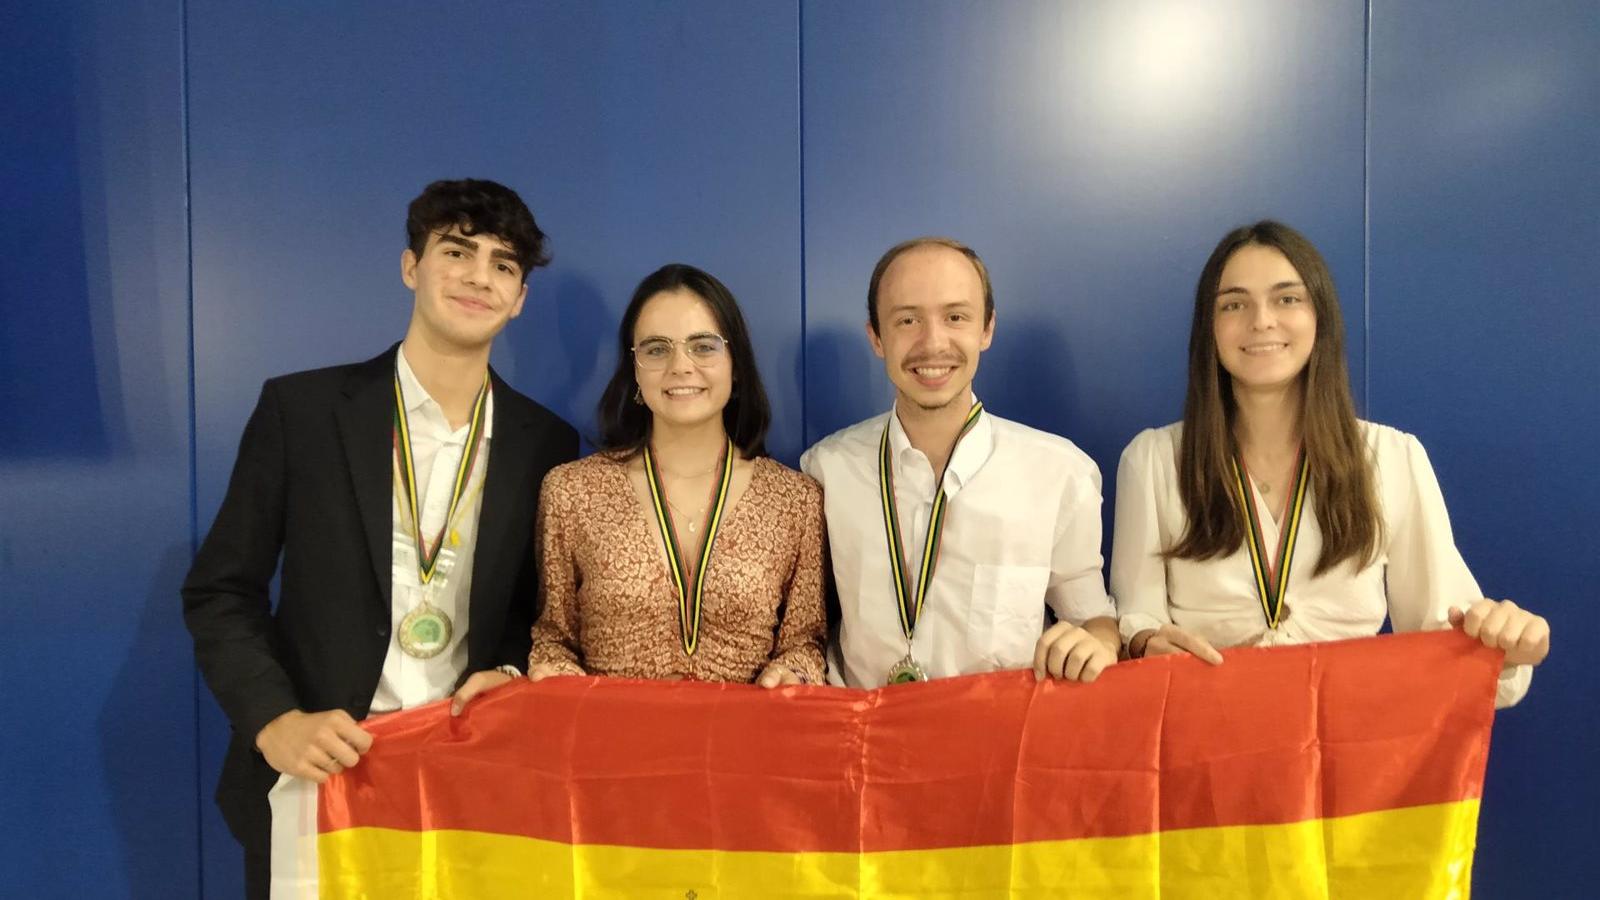 Un estudiante madrileño consigue la medalla de oro en la XVI Olimpiada Iberoamericana de Biología